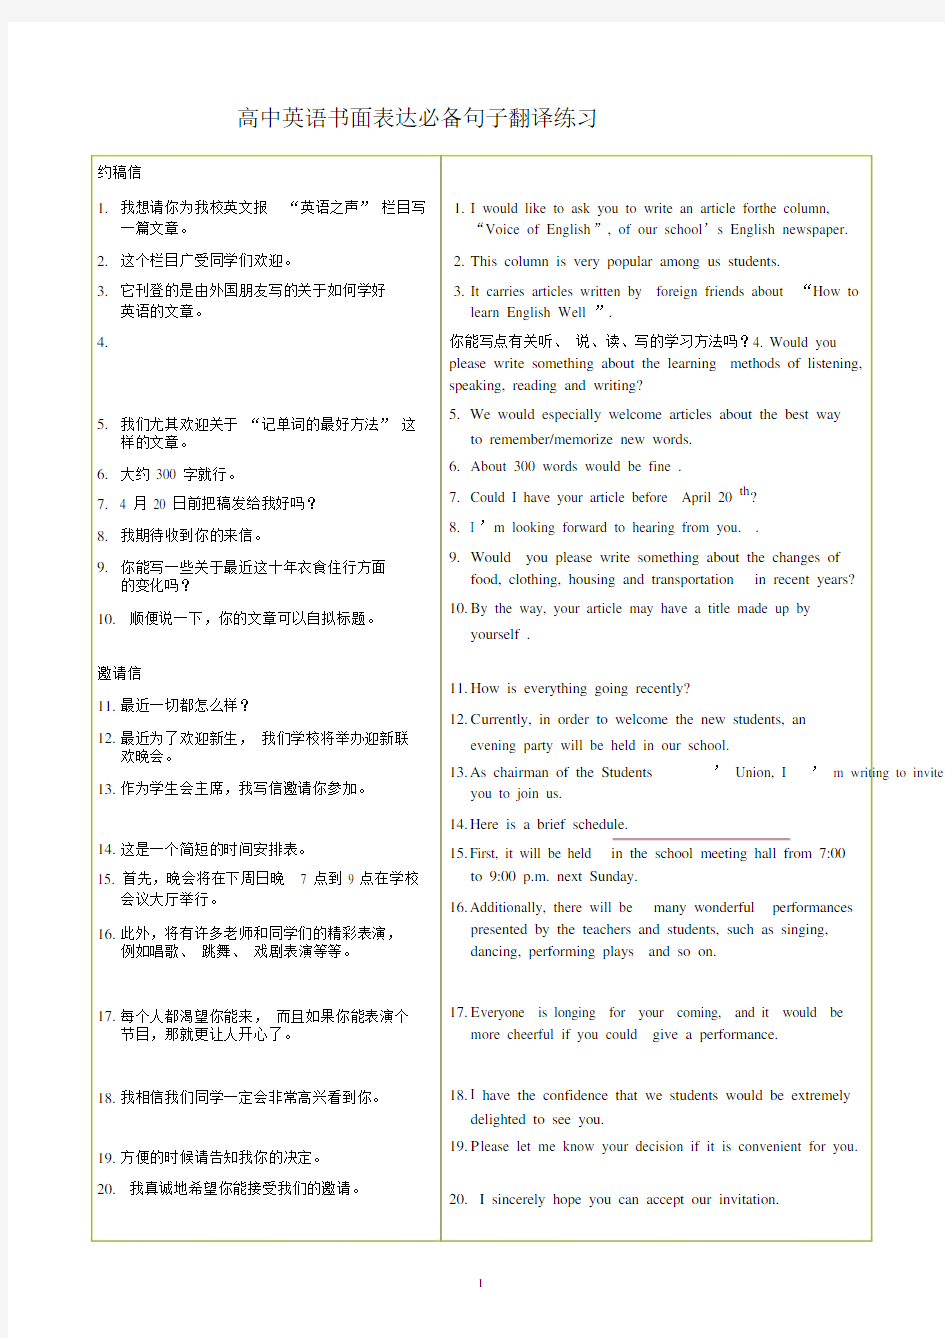 1--4页高中英语书面表达必备句子翻译练习